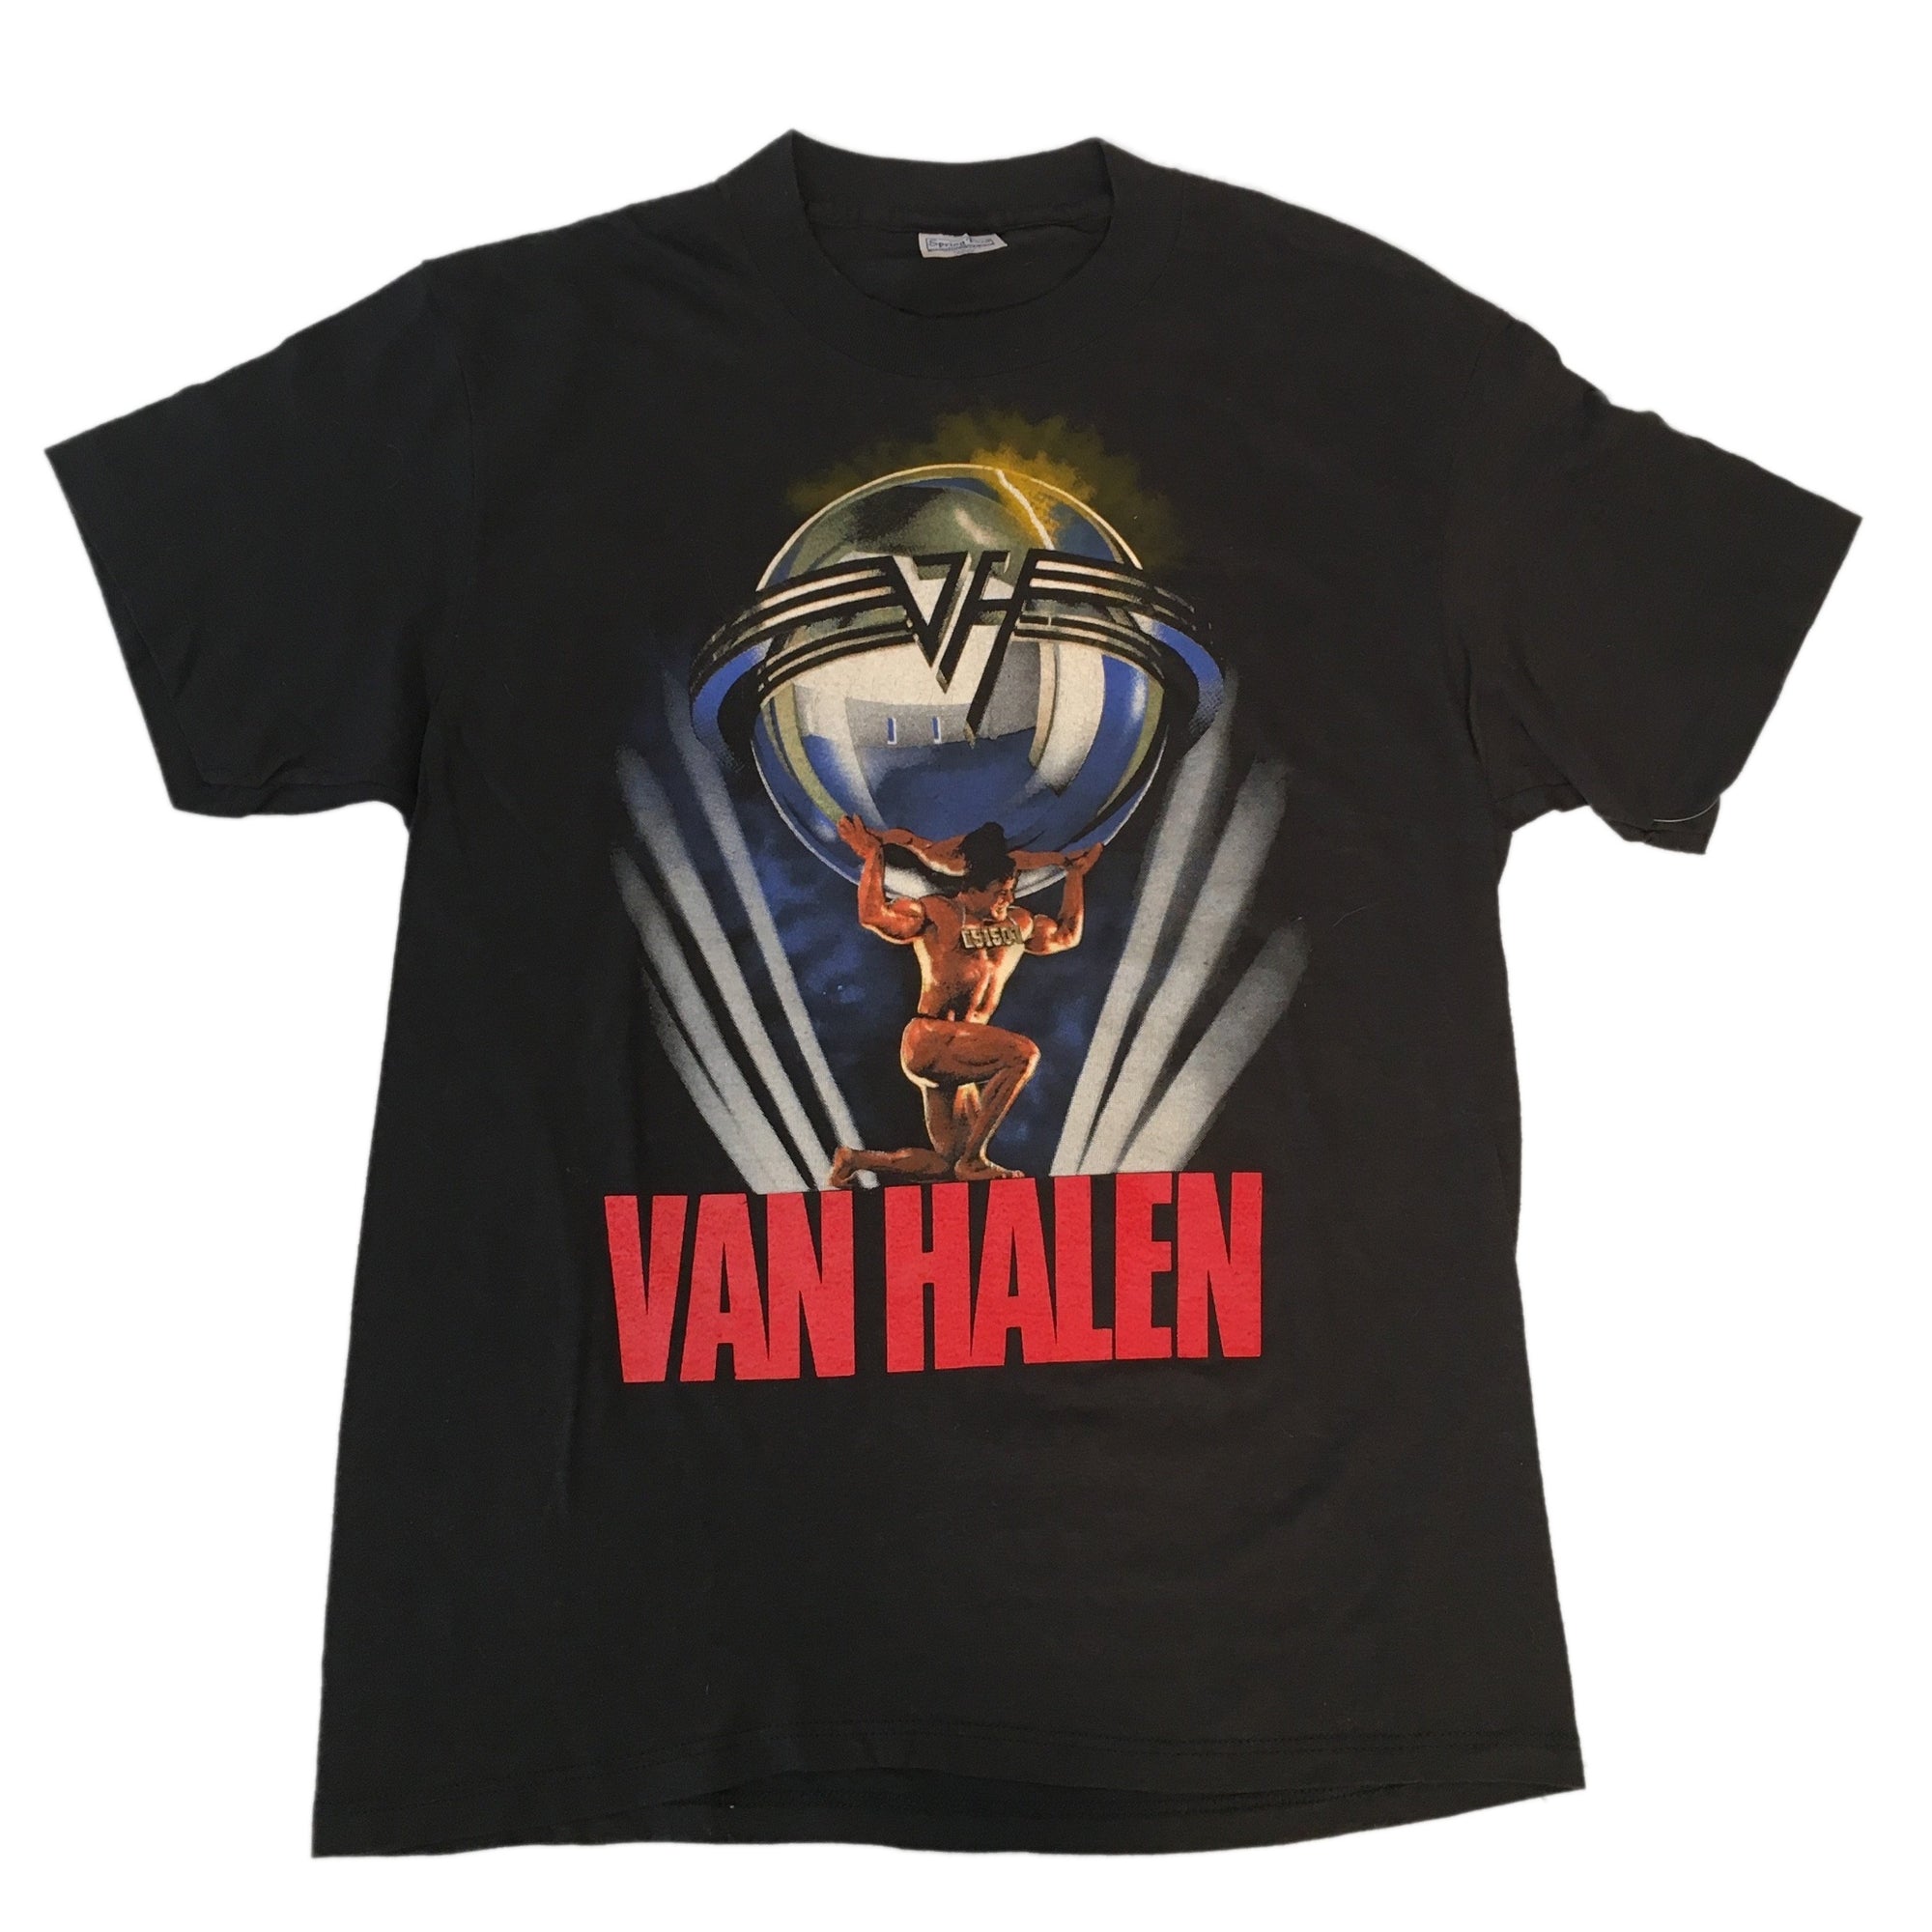 Vintage Van Halen "5150" T-shirt - jointcustodydc